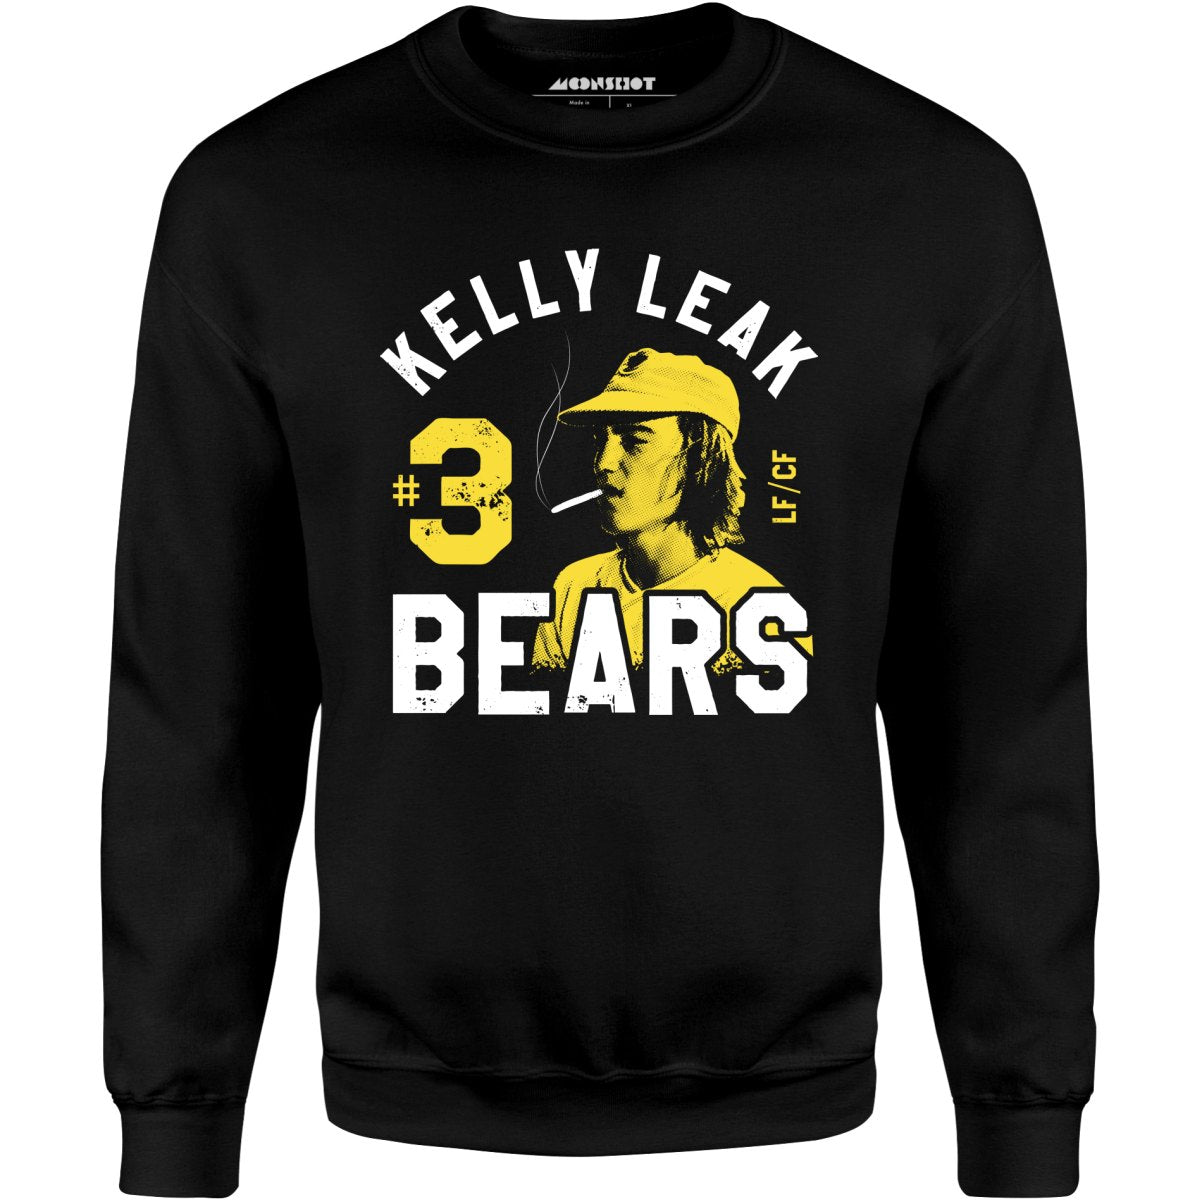 Kelly Leak #3 Bears - Unisex Sweatshirt